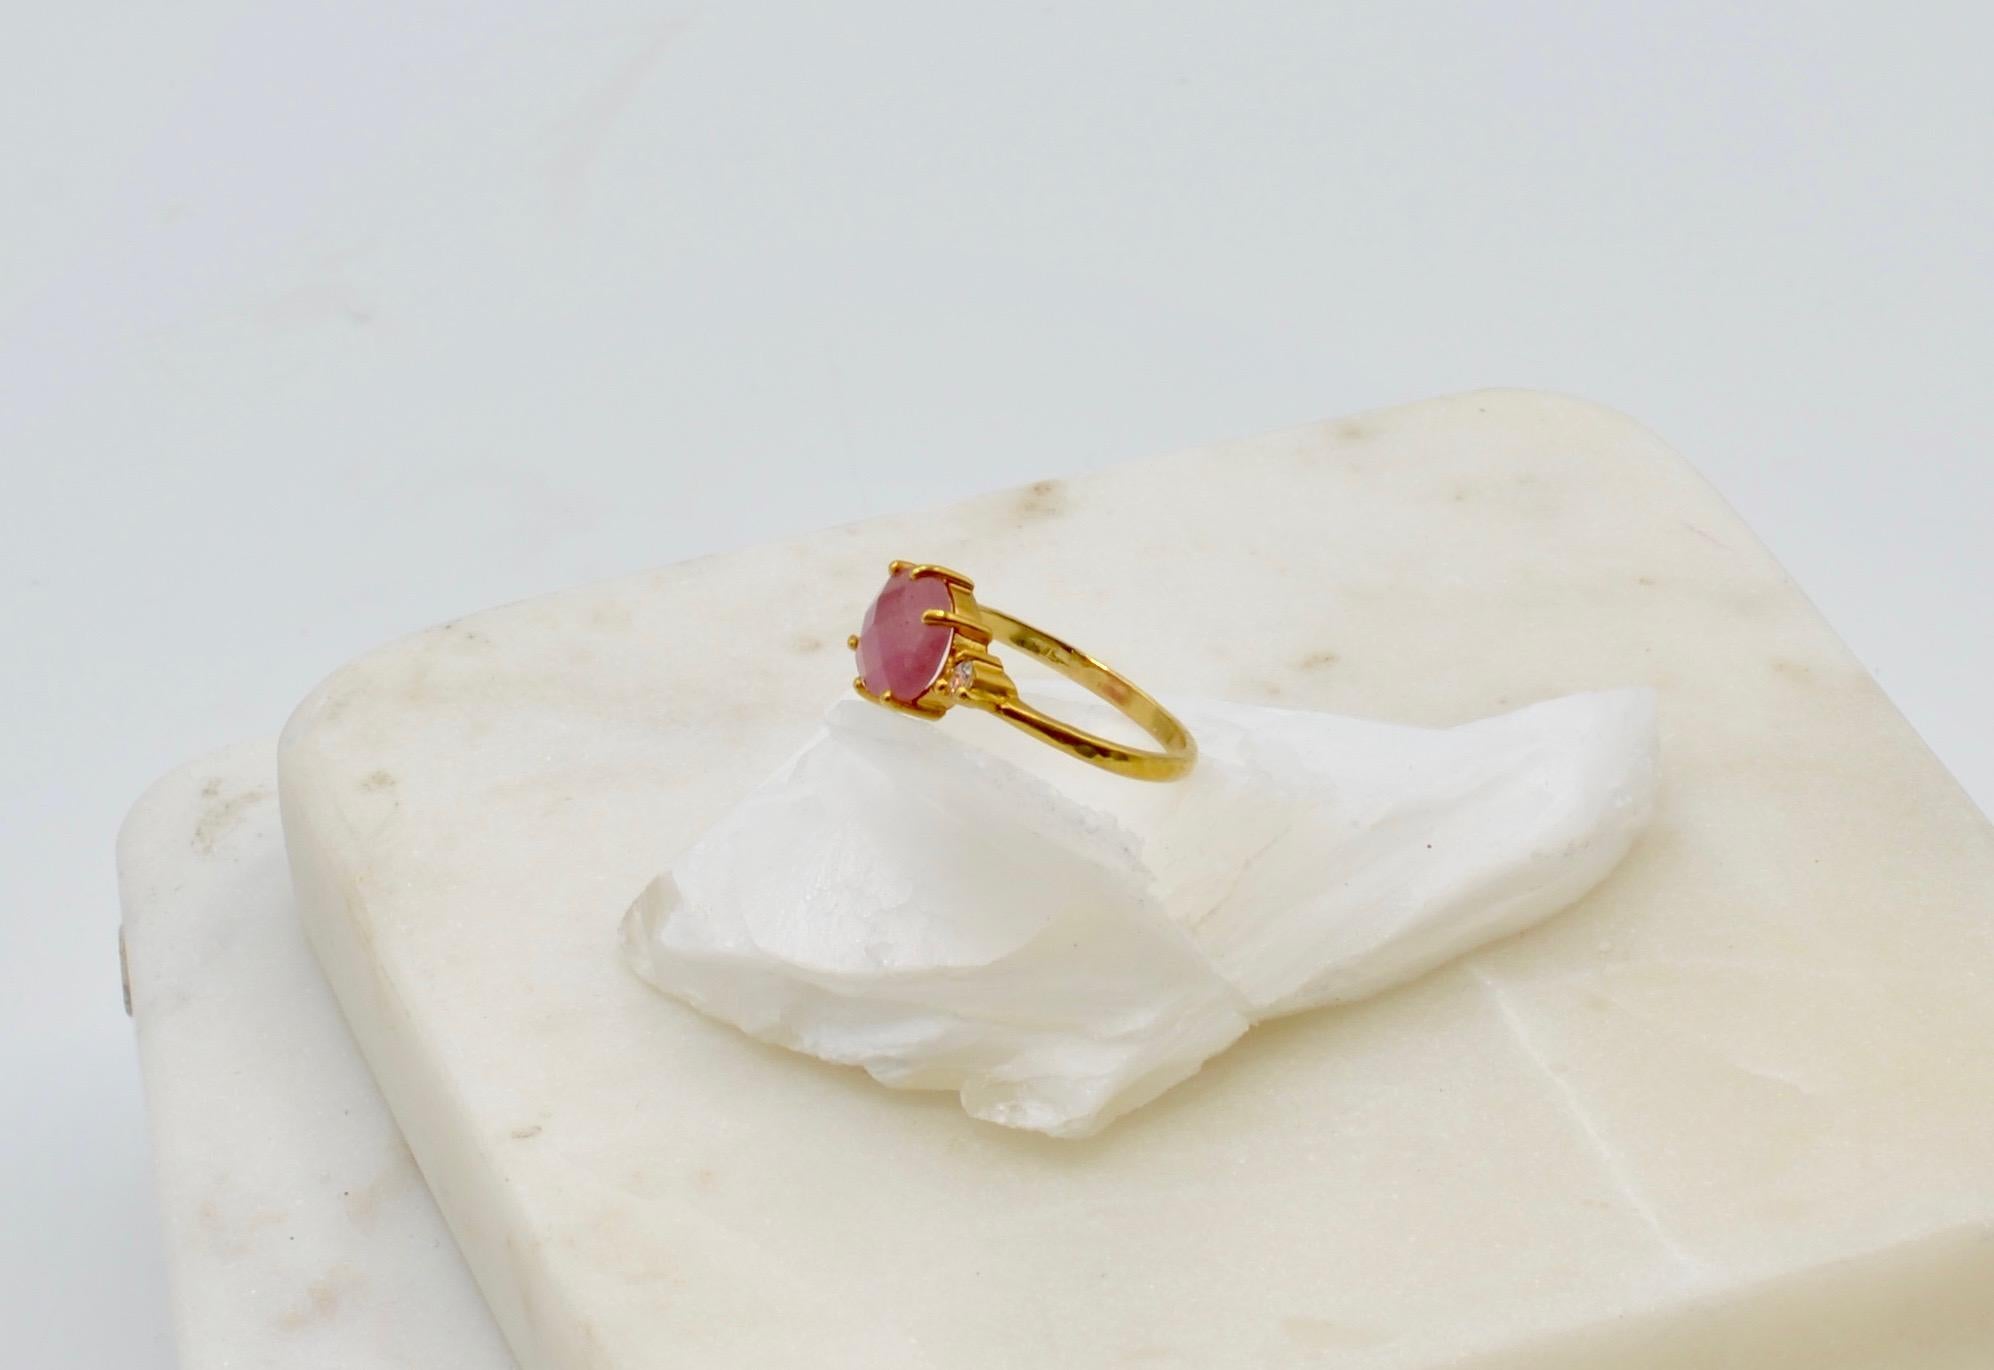 Ce magnifique saphir rose est taillé en rose et mesure environ 2,6 carats avec deux diamants d'accentuation blancs très brillants sertis en or 14 carats.  C'est une bague de fiançailles alternative ou votre bague préférée de tous les jours. La bague